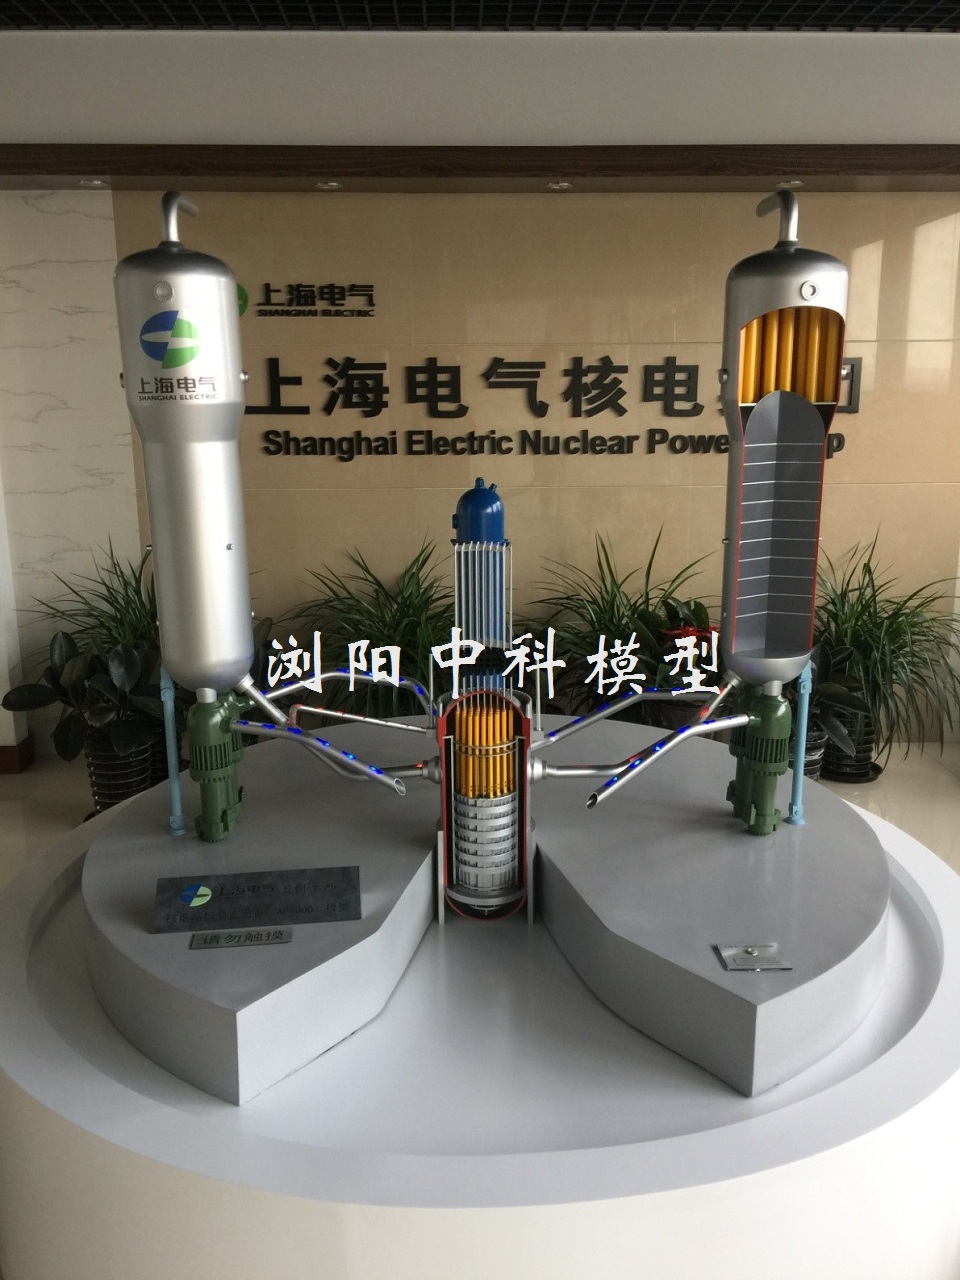 上海电气集团核电站模型